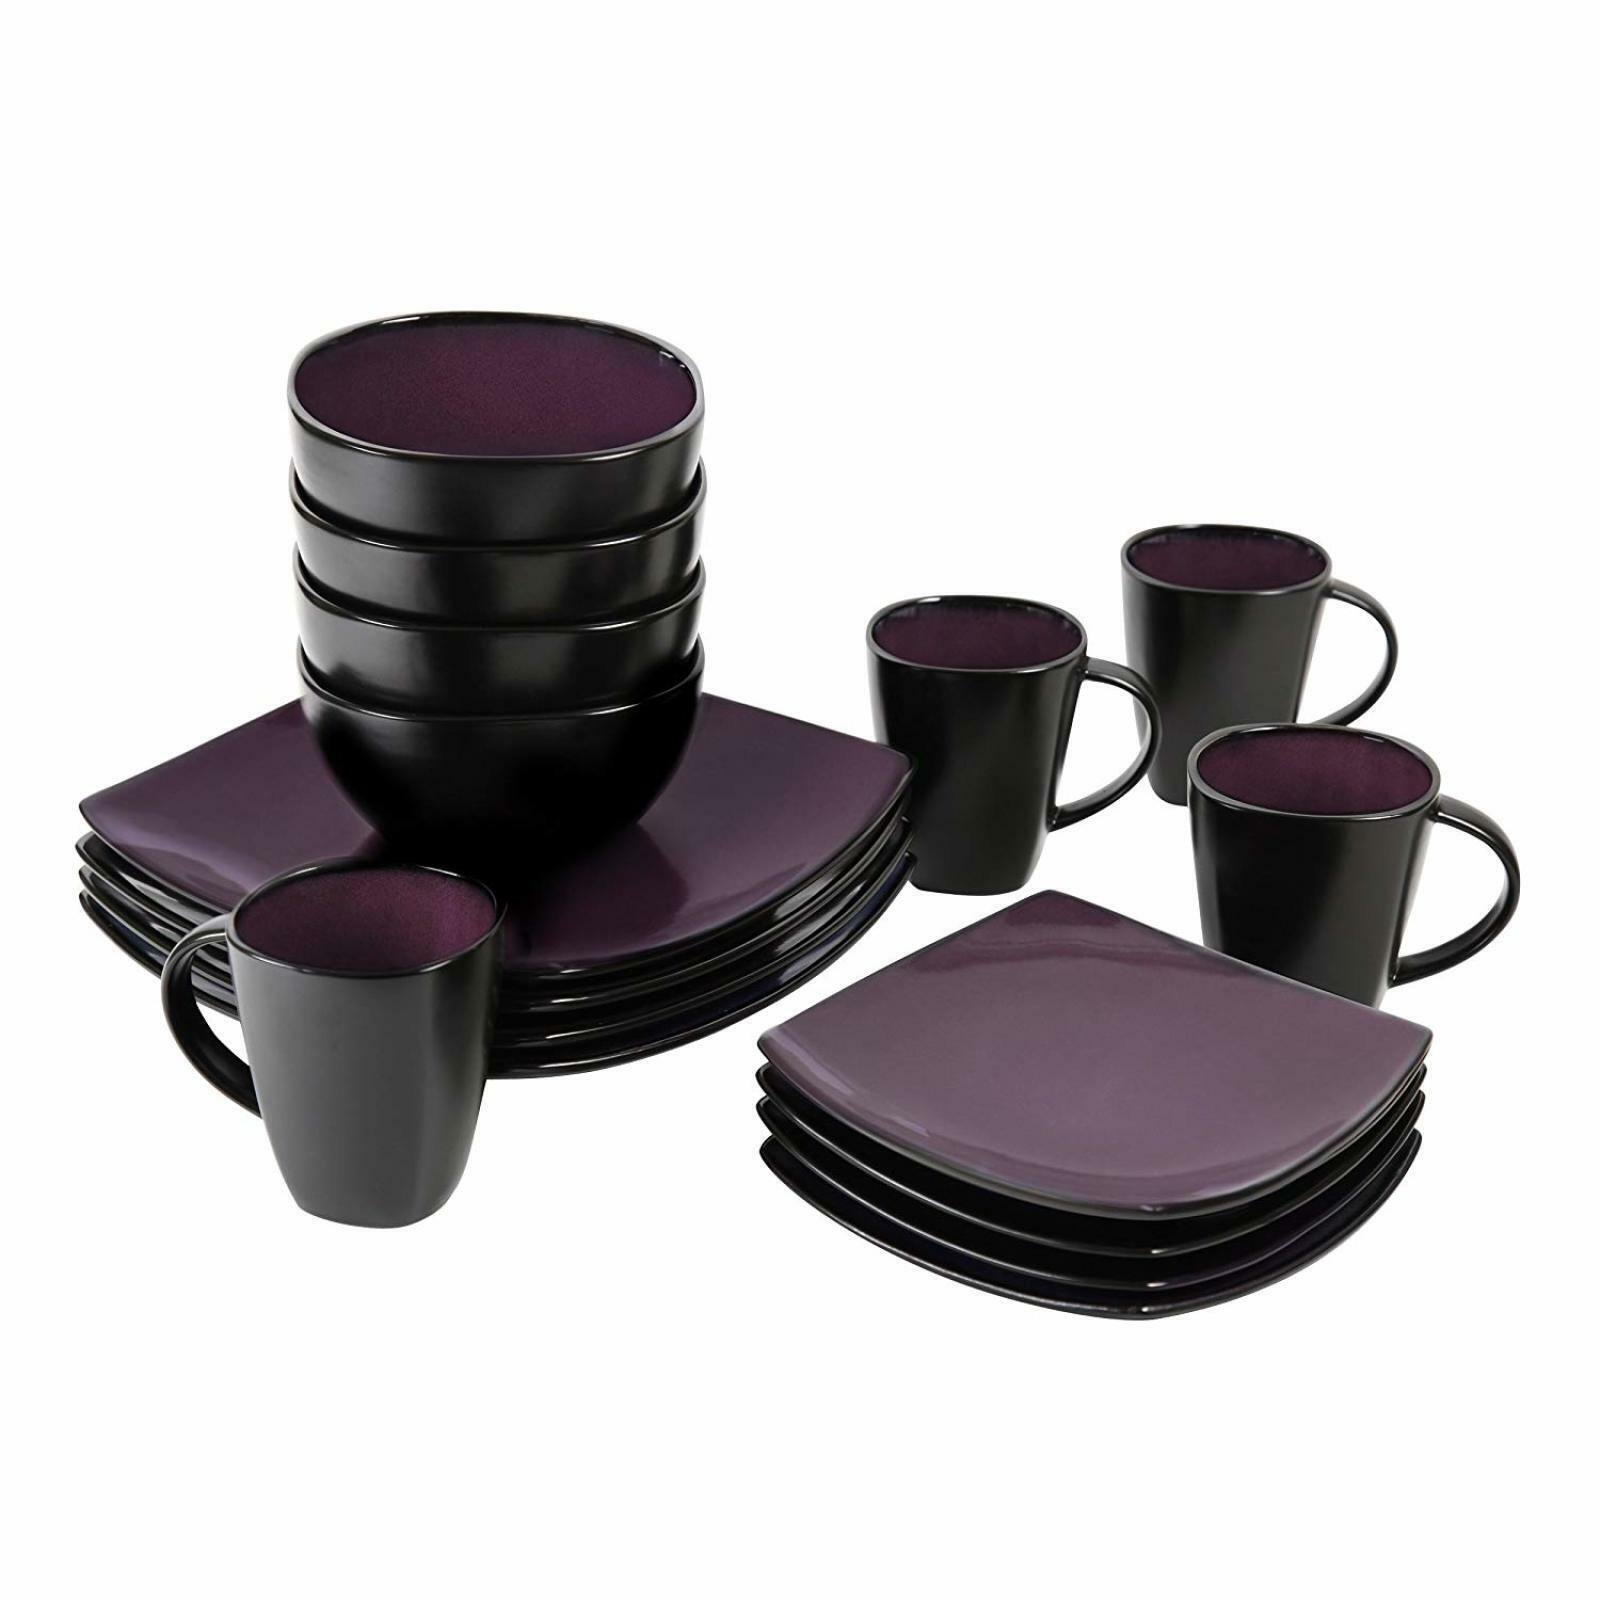 Черная посуда купить. Гибсон Сохо 16-piece набор посуды. Stoneware Dinnerware Set посуда. Люминарк посуда бордо. Чайный набор Black Baccara.